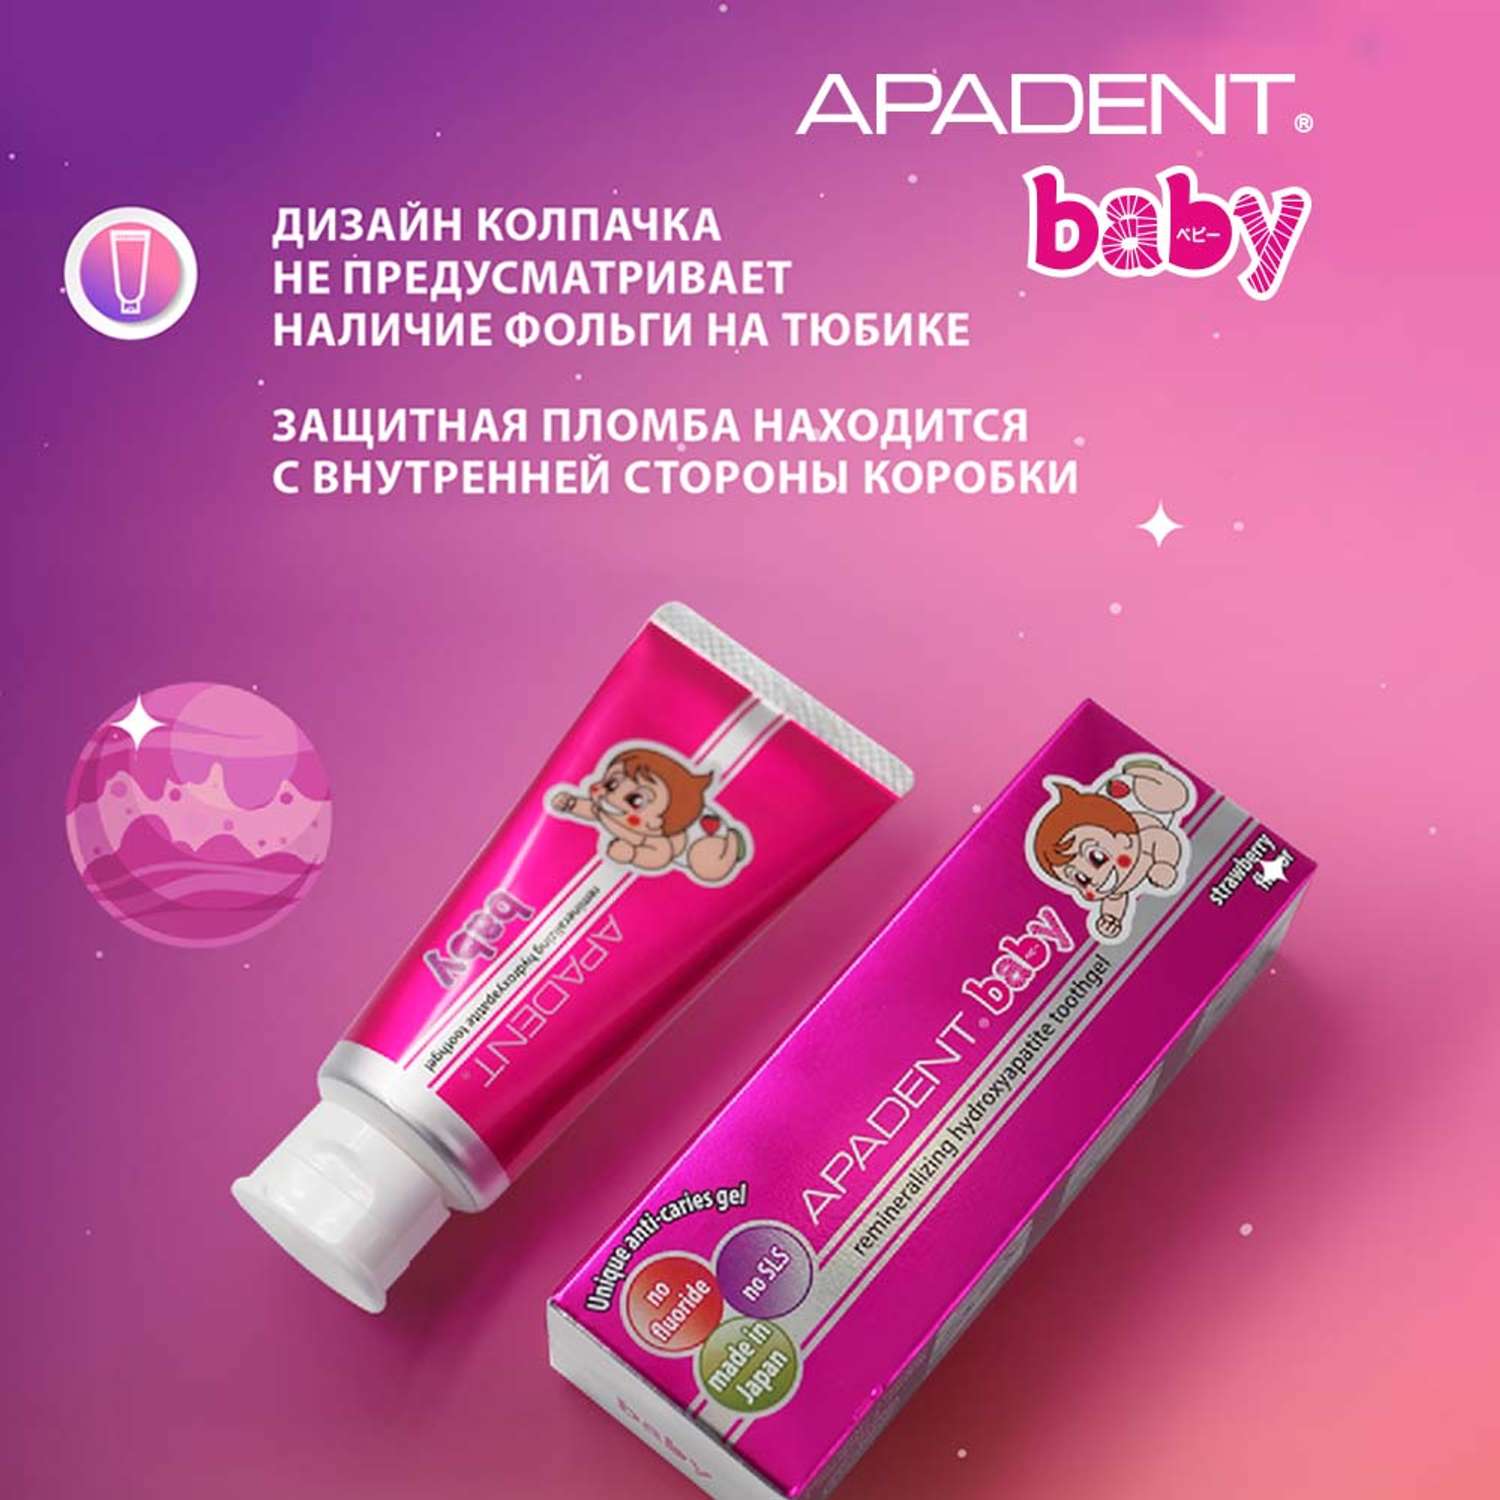 Детская зубная паста-гель Apadent Baby для молочных зубов малышей от 0 до 3 лет со вкусом клубники 55 г - фото 6